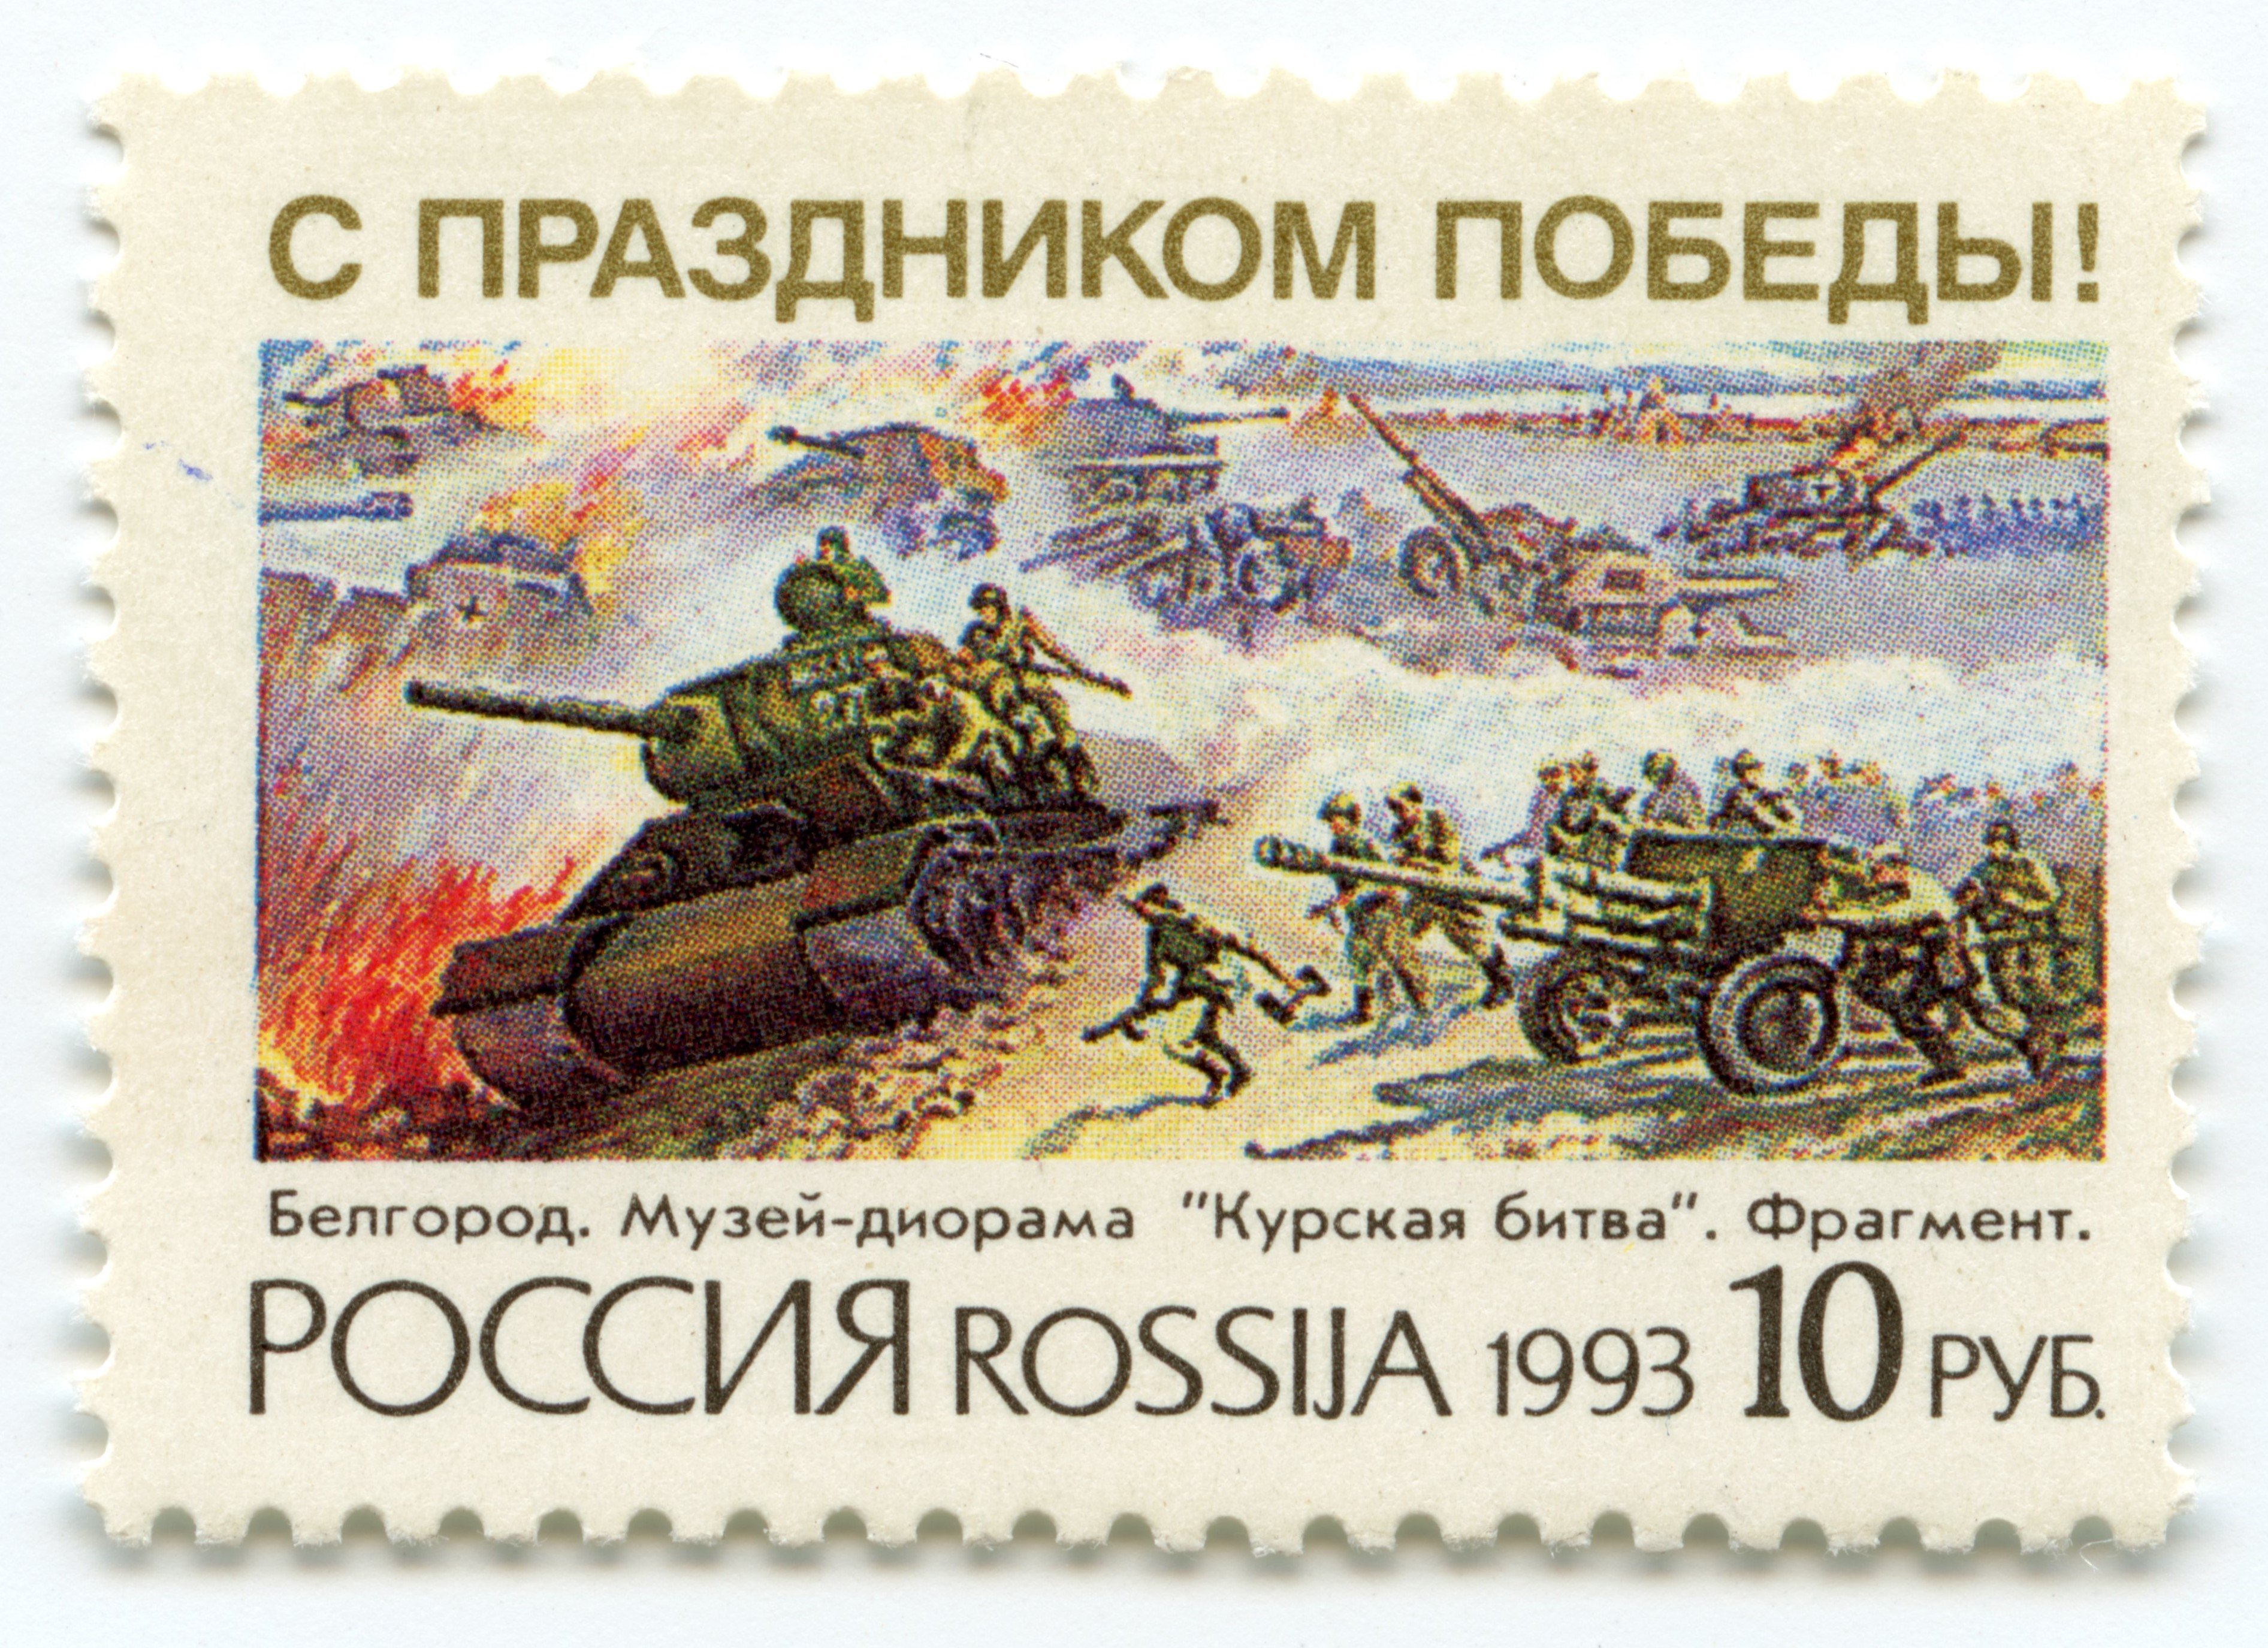 Briefmarke "Zum Tag des Sieges! Belgorod. Diorama-Museum „Kursker Schlacht“. Fragment der Panzerschlacht bei Prohorovka", Russland, 1993 (Museum Berlin-Karlshorst CC BY-NC-SA)